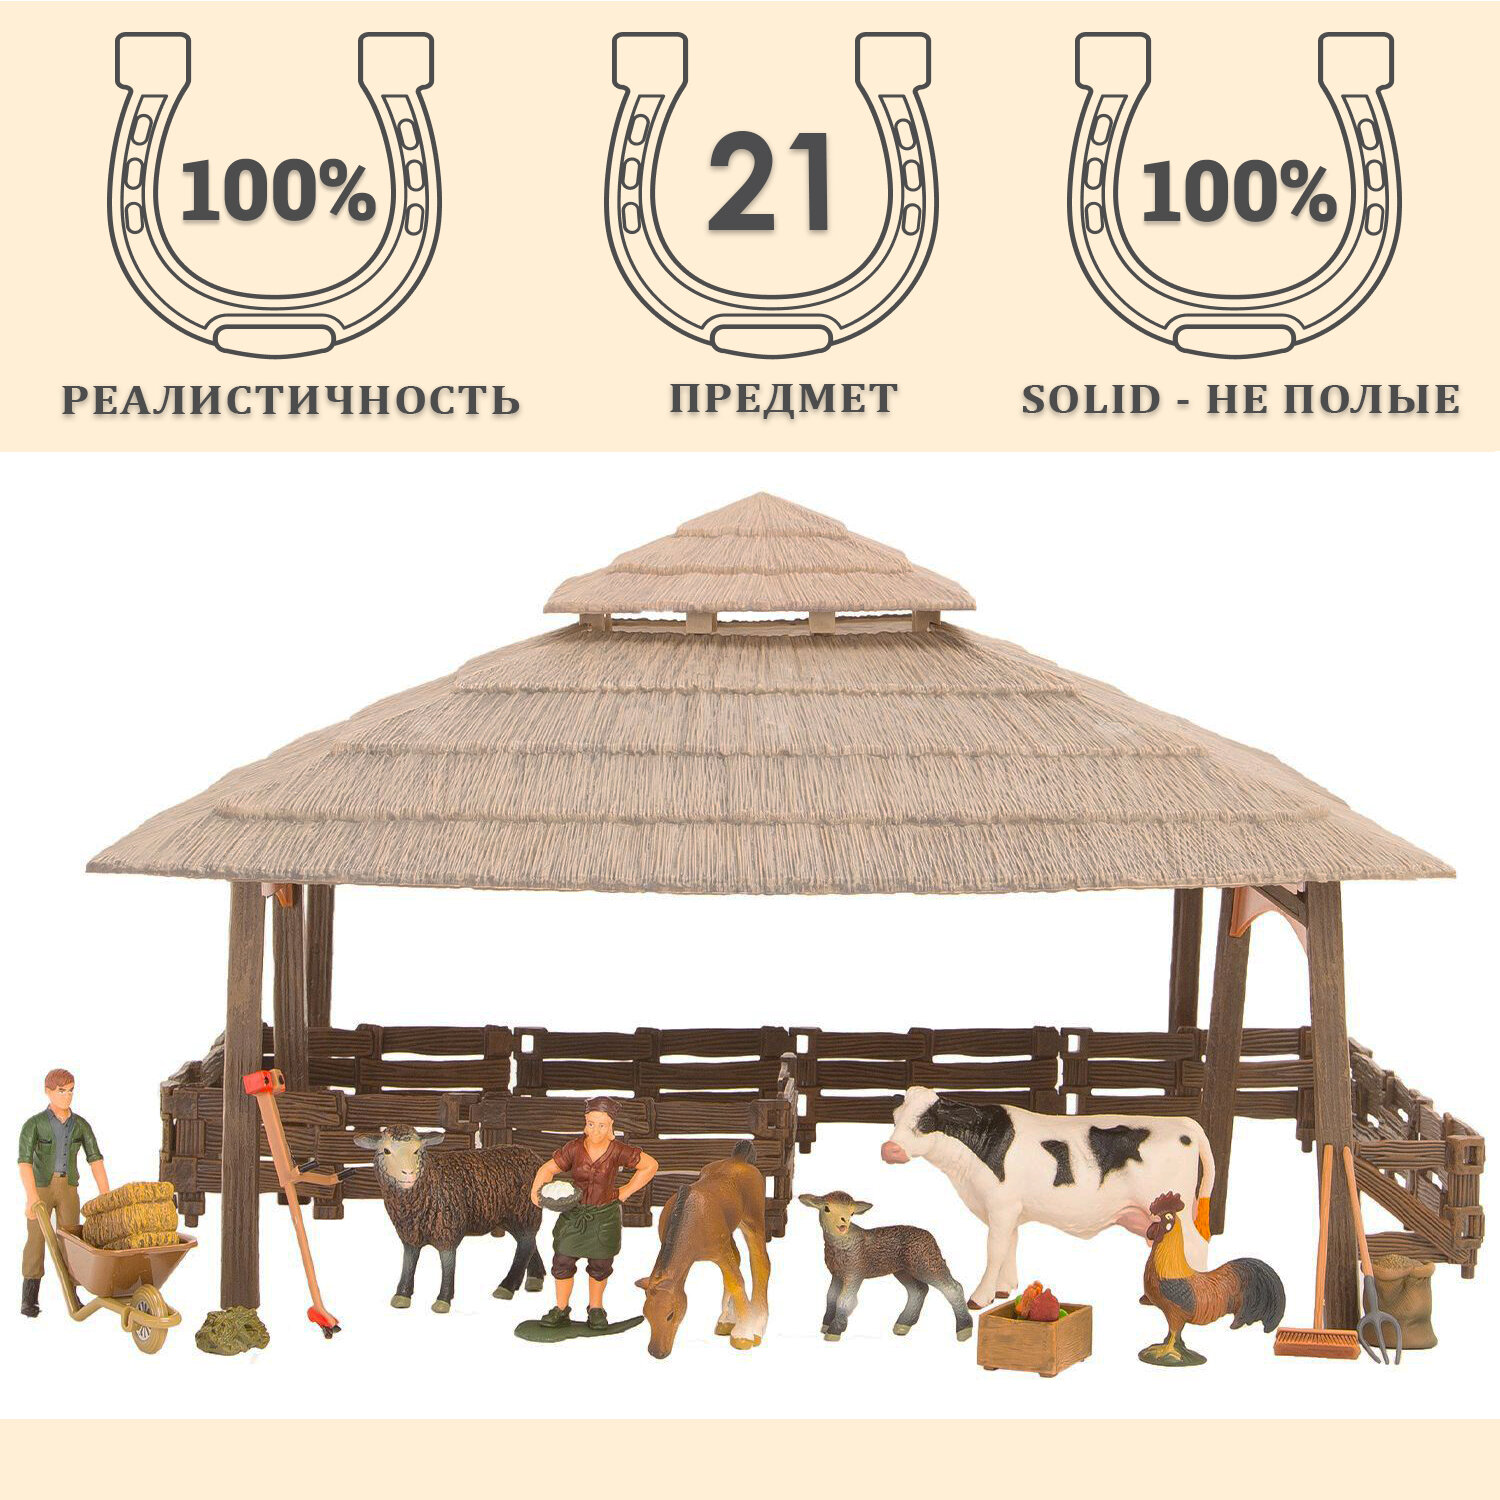 Набор фигурок животных серии "На ферме": Ферма игрушка, корова, овцы, петух, жеребенок, фермеры, инвентарь - 21 предмет